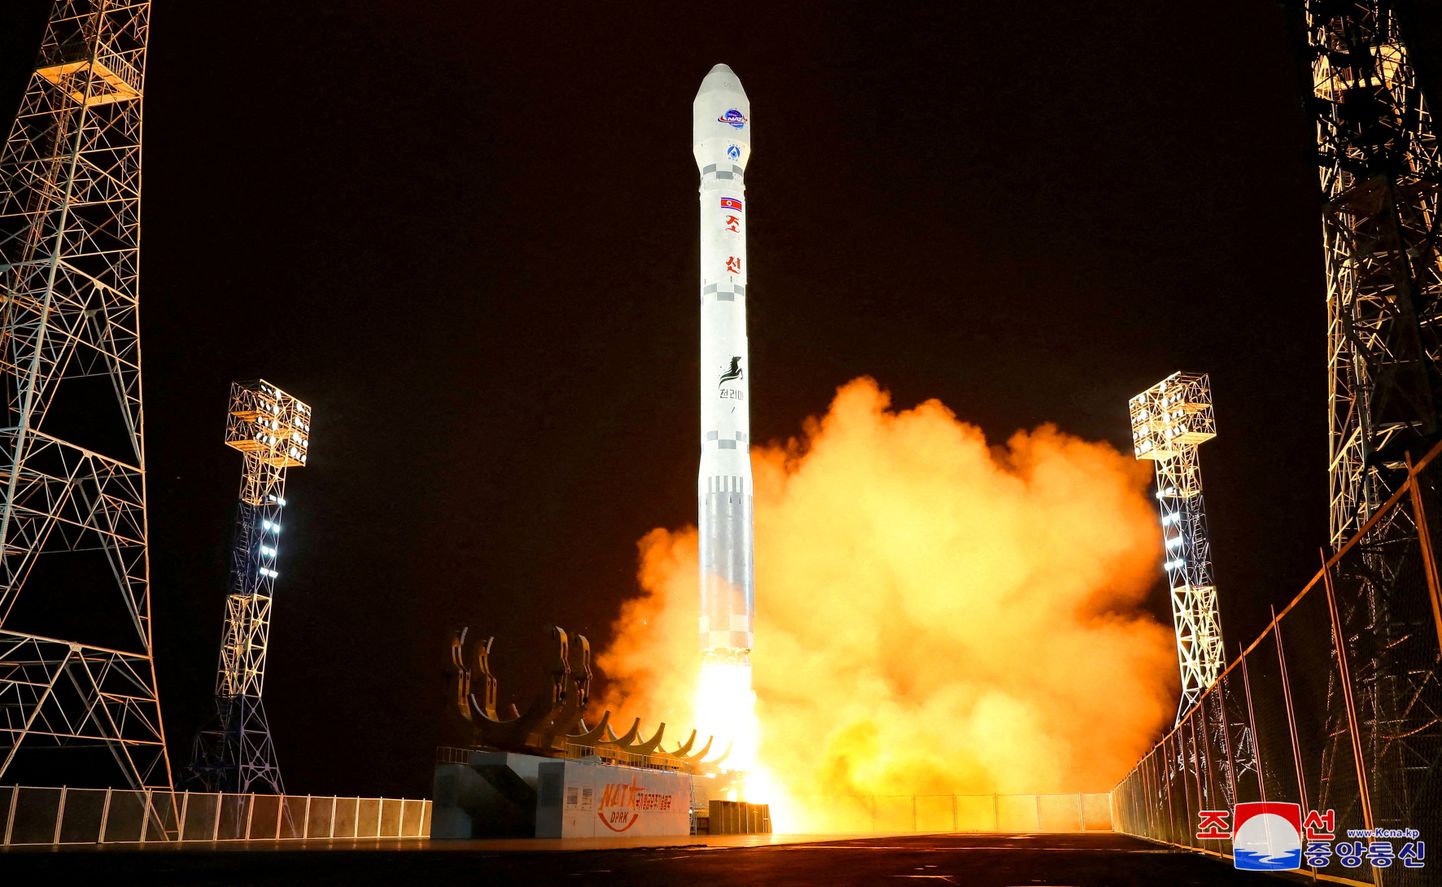 Põhja-Korea väidetava luuresatelliidi Malligyong-1 start 21. novembril.